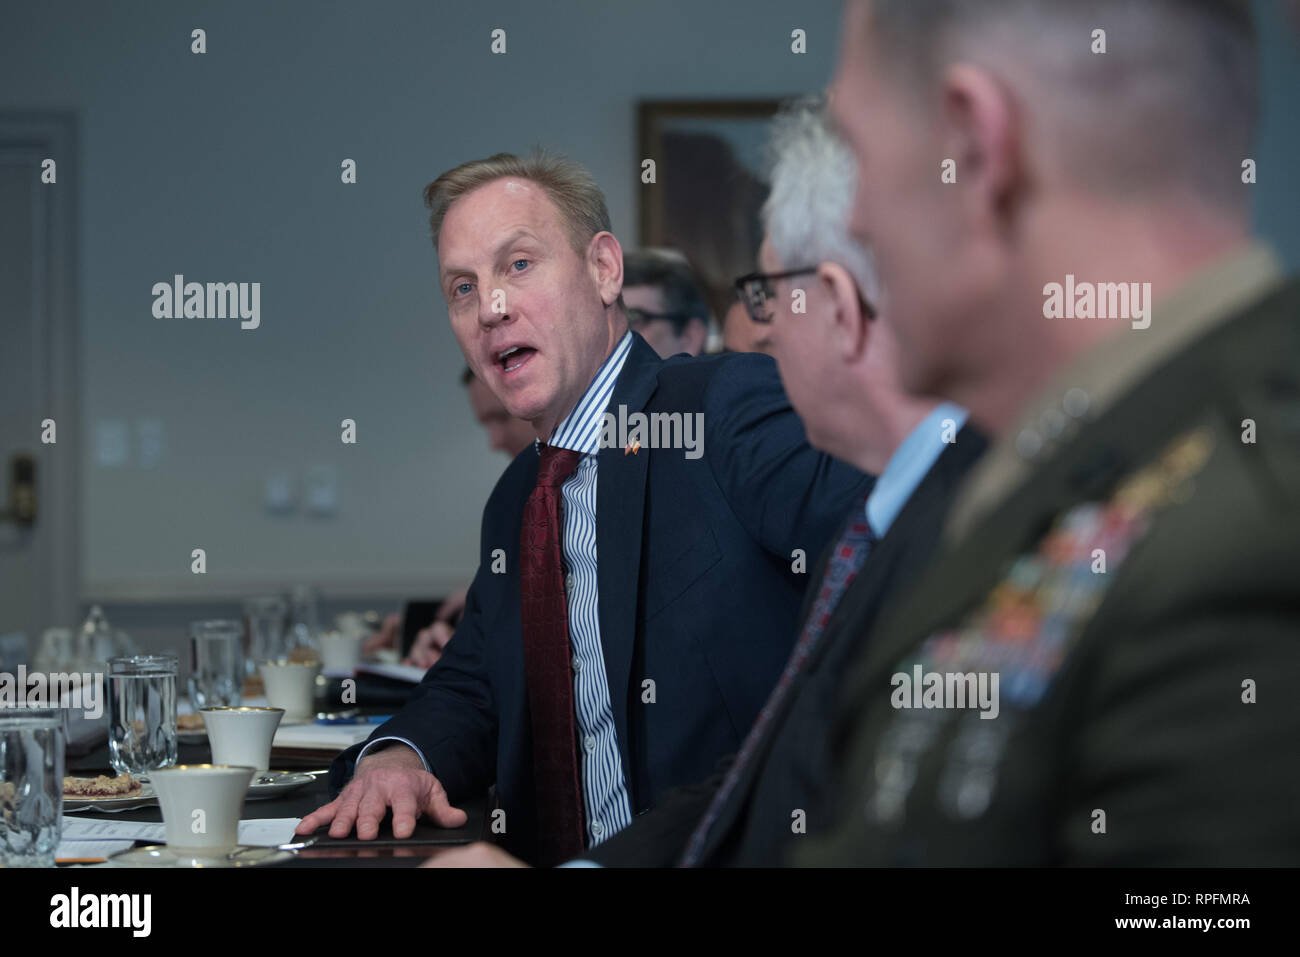 El Secretario de Defensa interino estadounidense Patrick Shanahan durante una reunión con el Ministro de Defensa belga Didier Reynders en el Pentágono el 21 de febrero de 2019 en Arlington, Virginia. Foto de stock